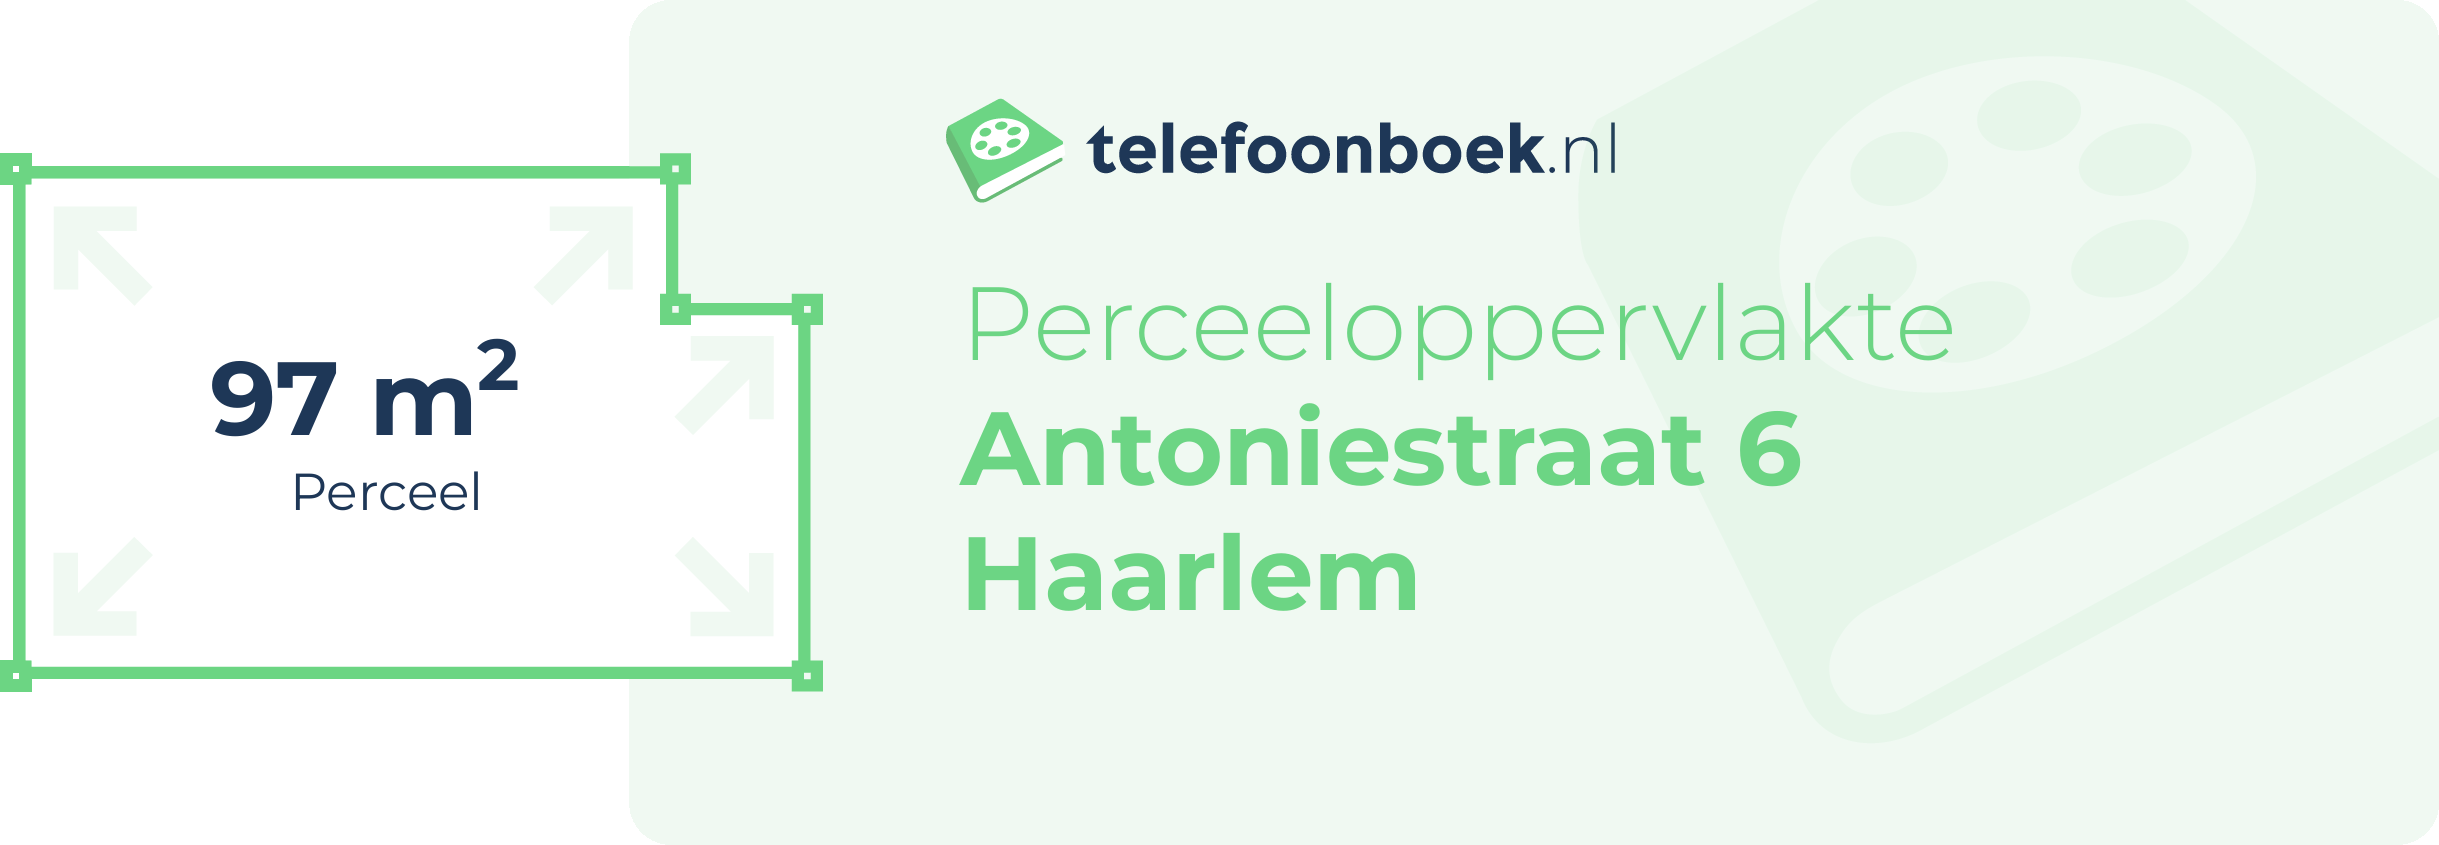 Perceeloppervlakte Antoniestraat 6 Haarlem